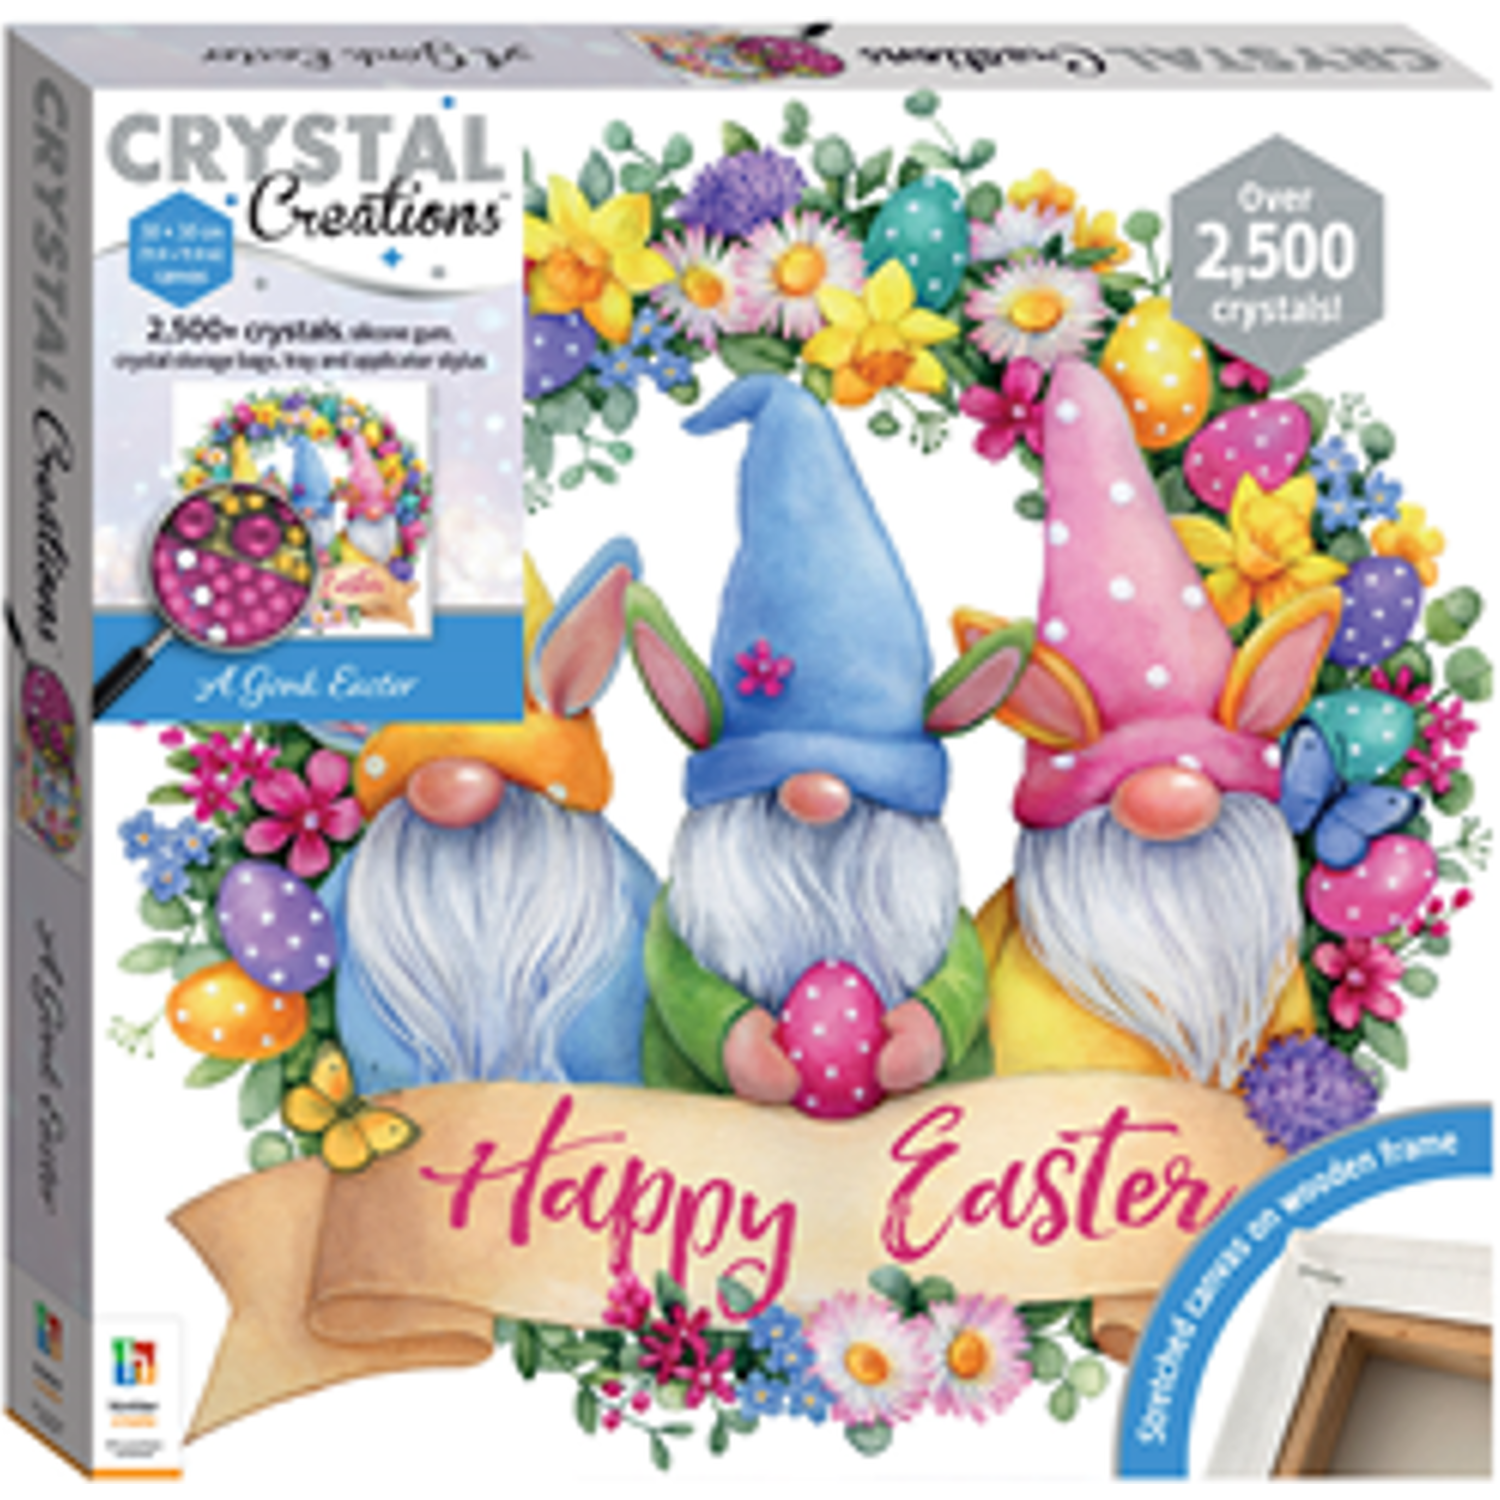 Hinkler Crystal Creations Make Your Own Easter Gonk Kit Image